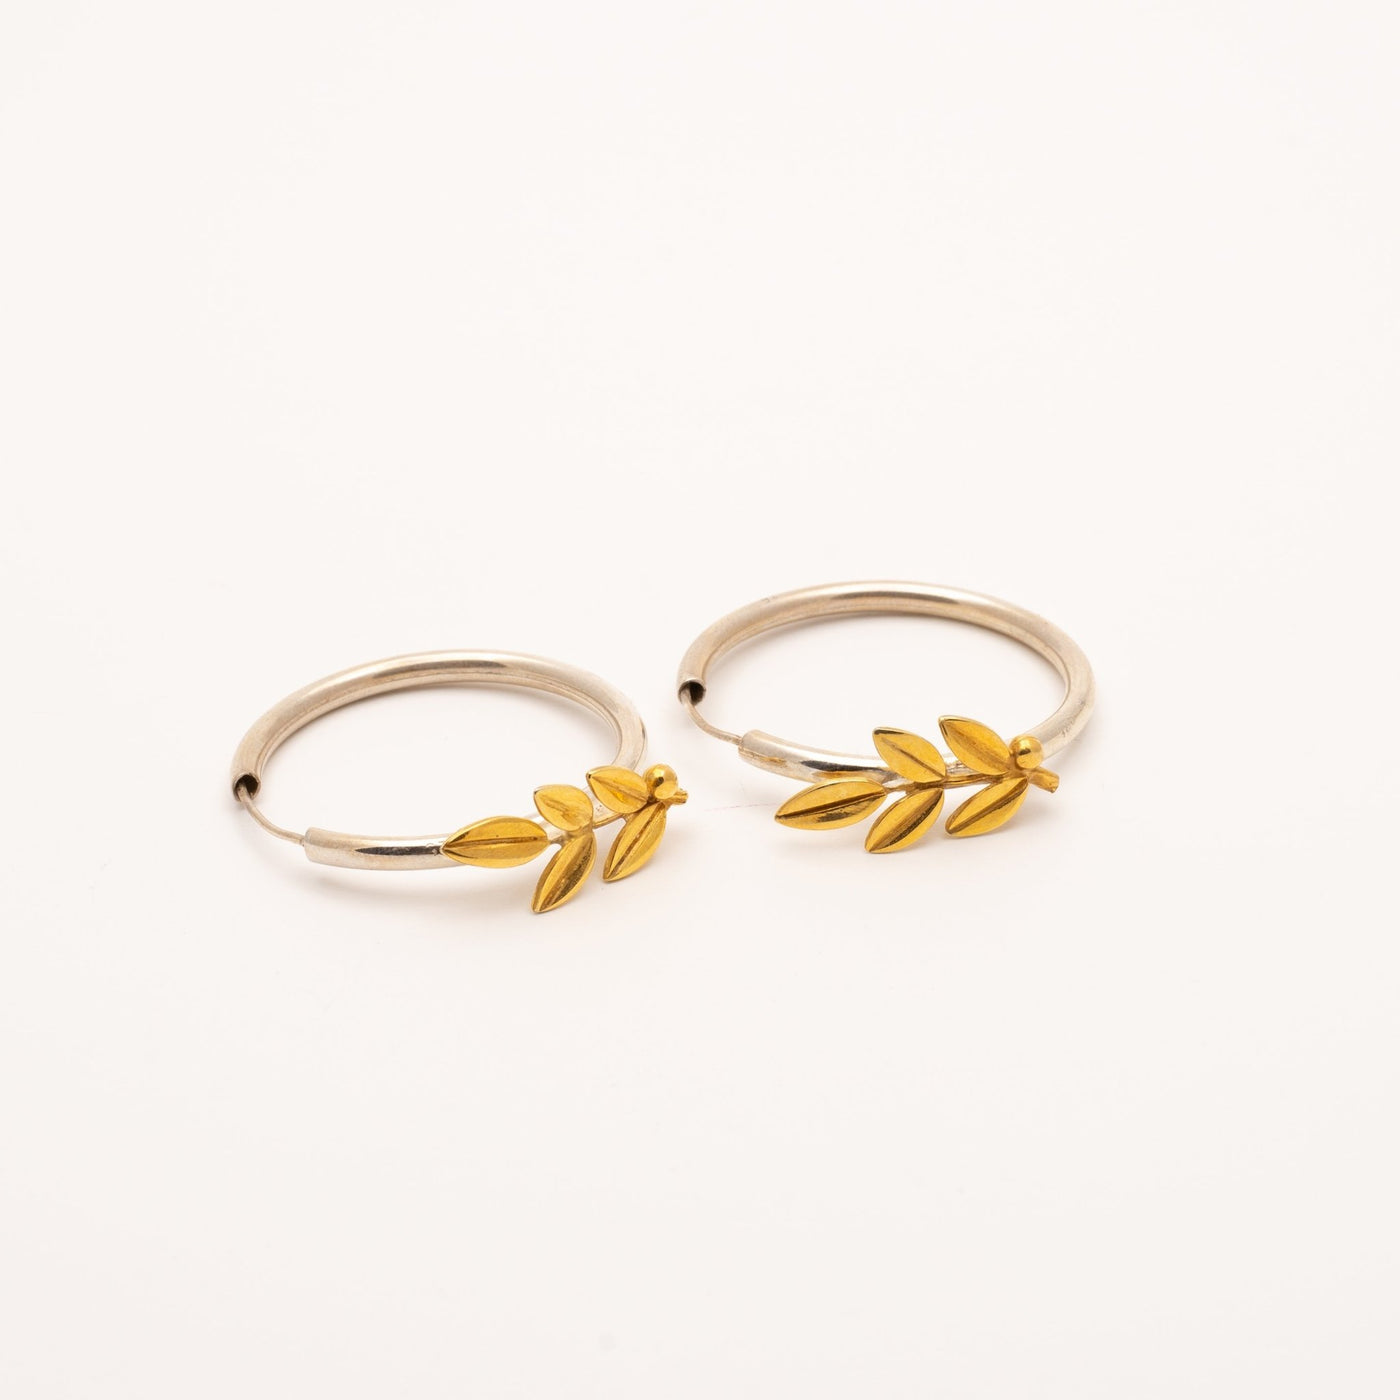 Olive leaves freak silver hoop earrings - Maral Kunst Jewelry